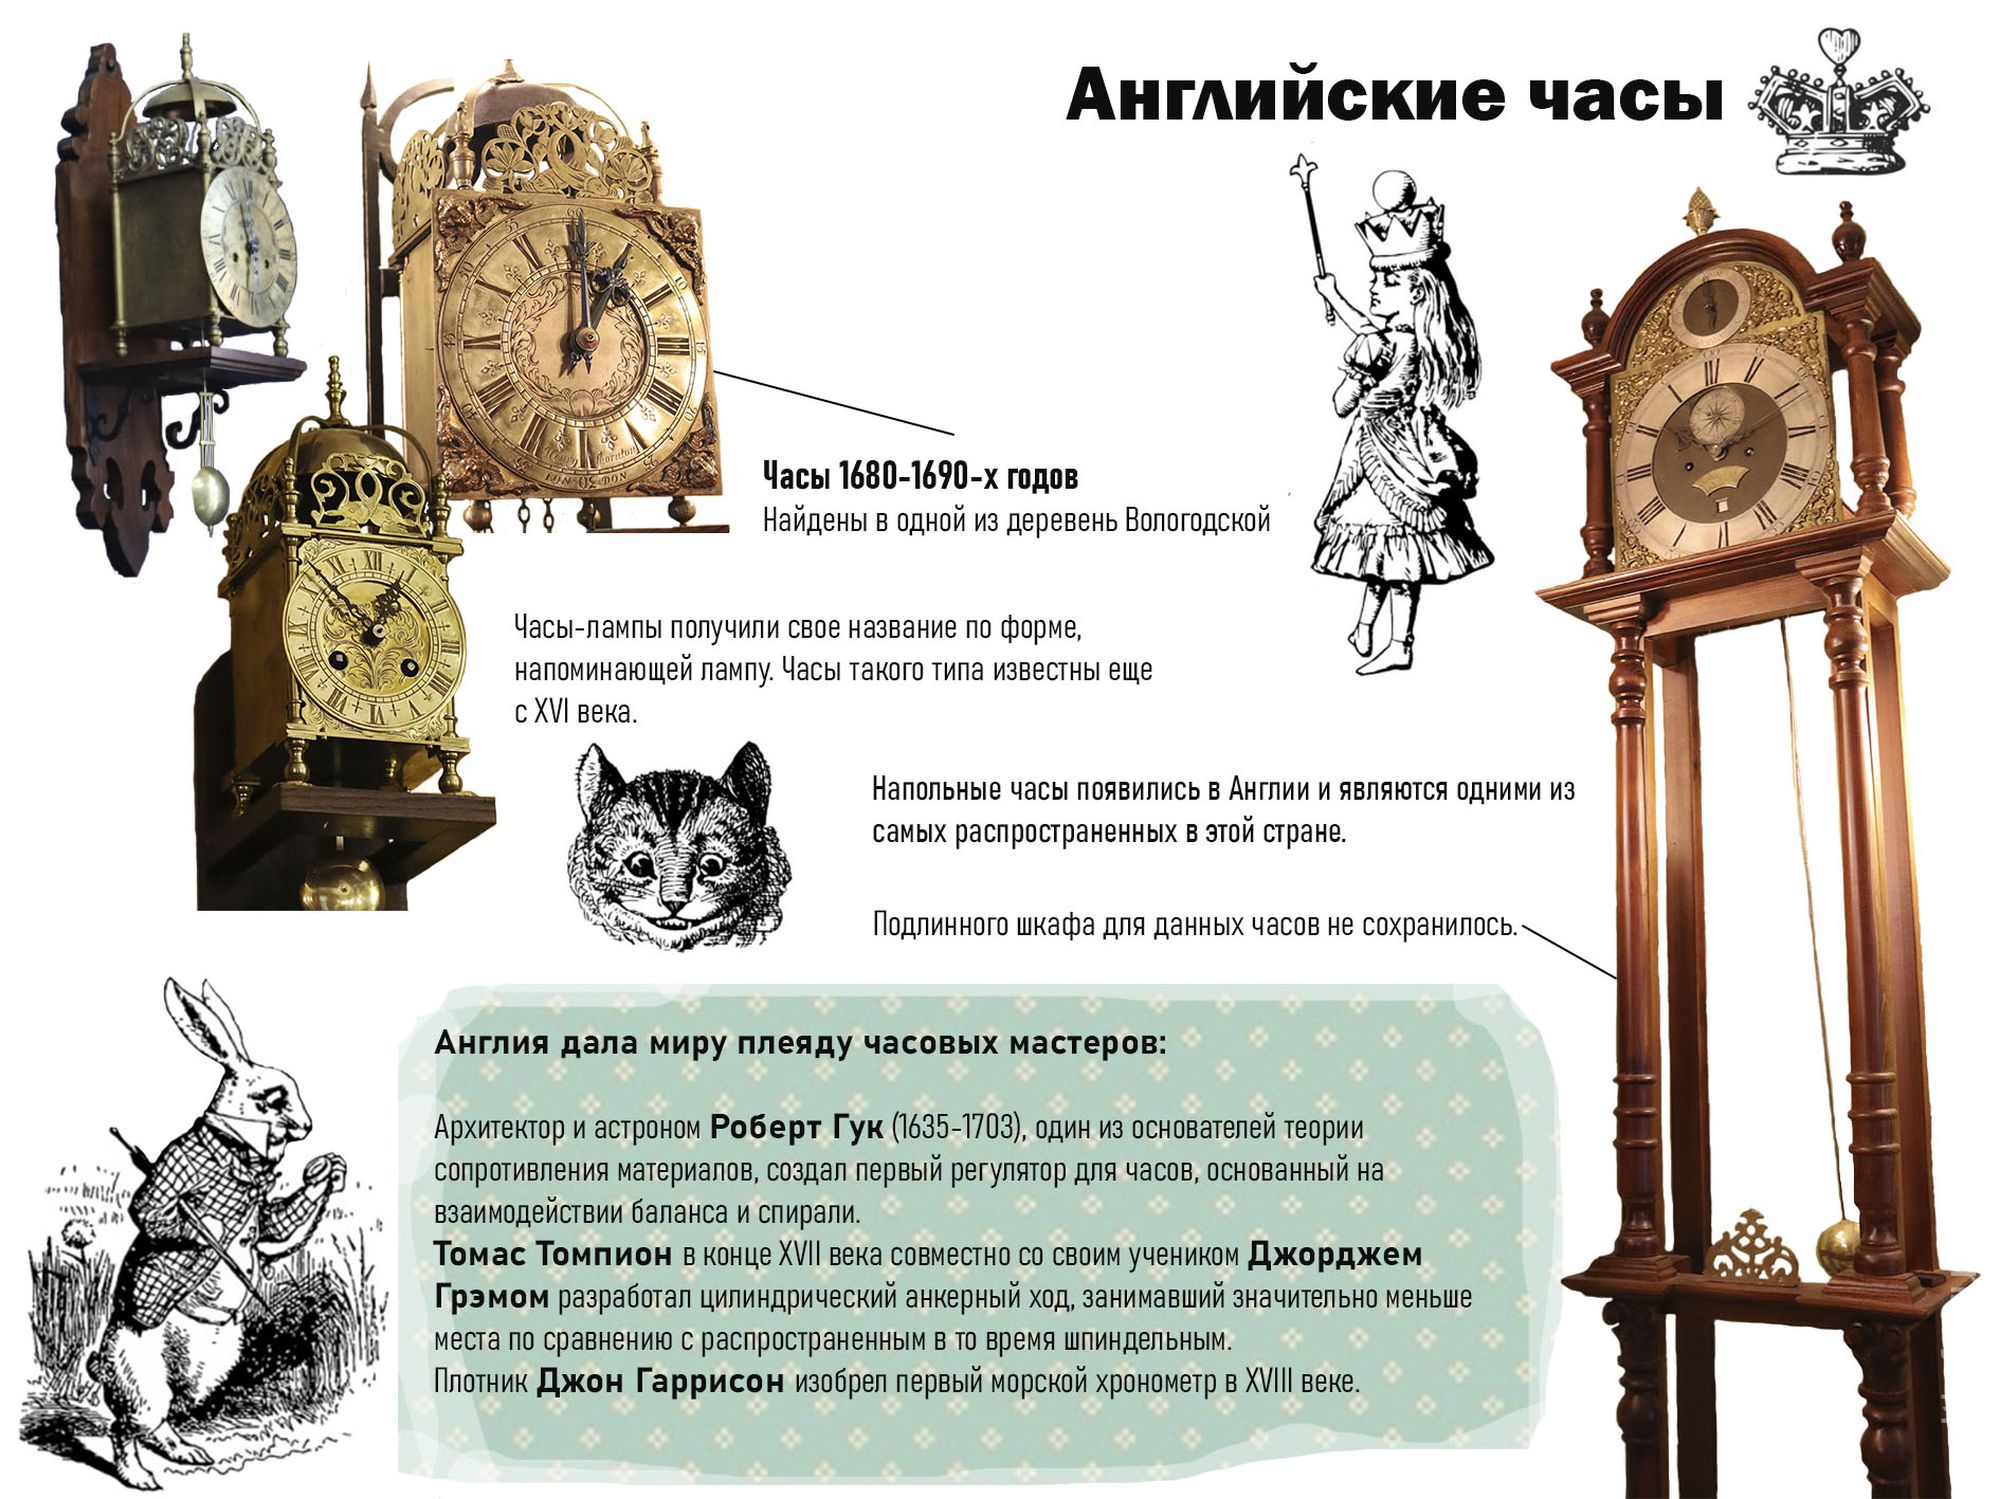  Английские часы из коллекции Дмитрия Скрицкого